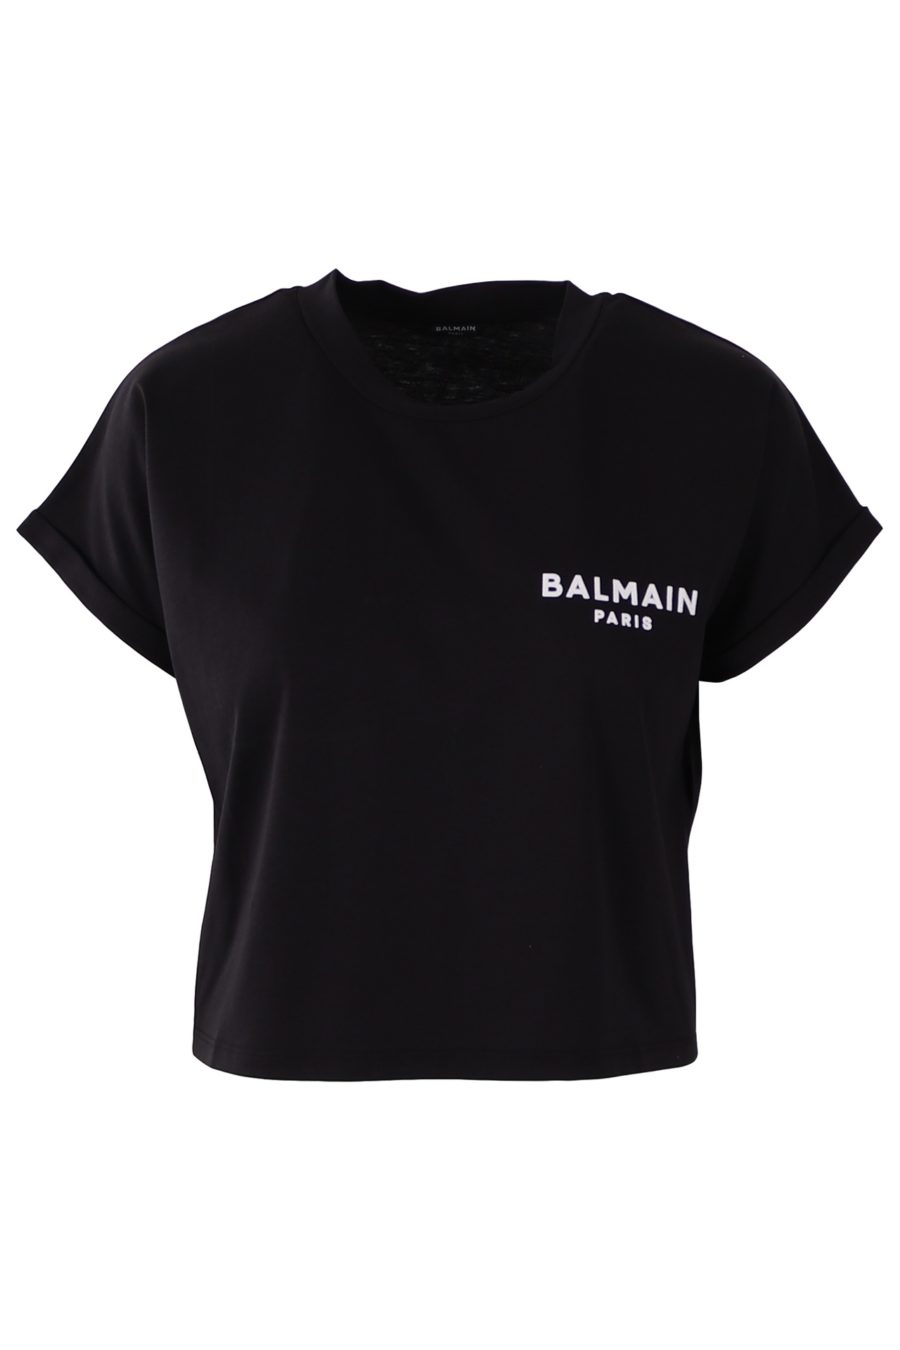 Balmain t-shirt court noir avec petit logo - 2fed960d4683afff8c064cd8a38aa43f53d6046f